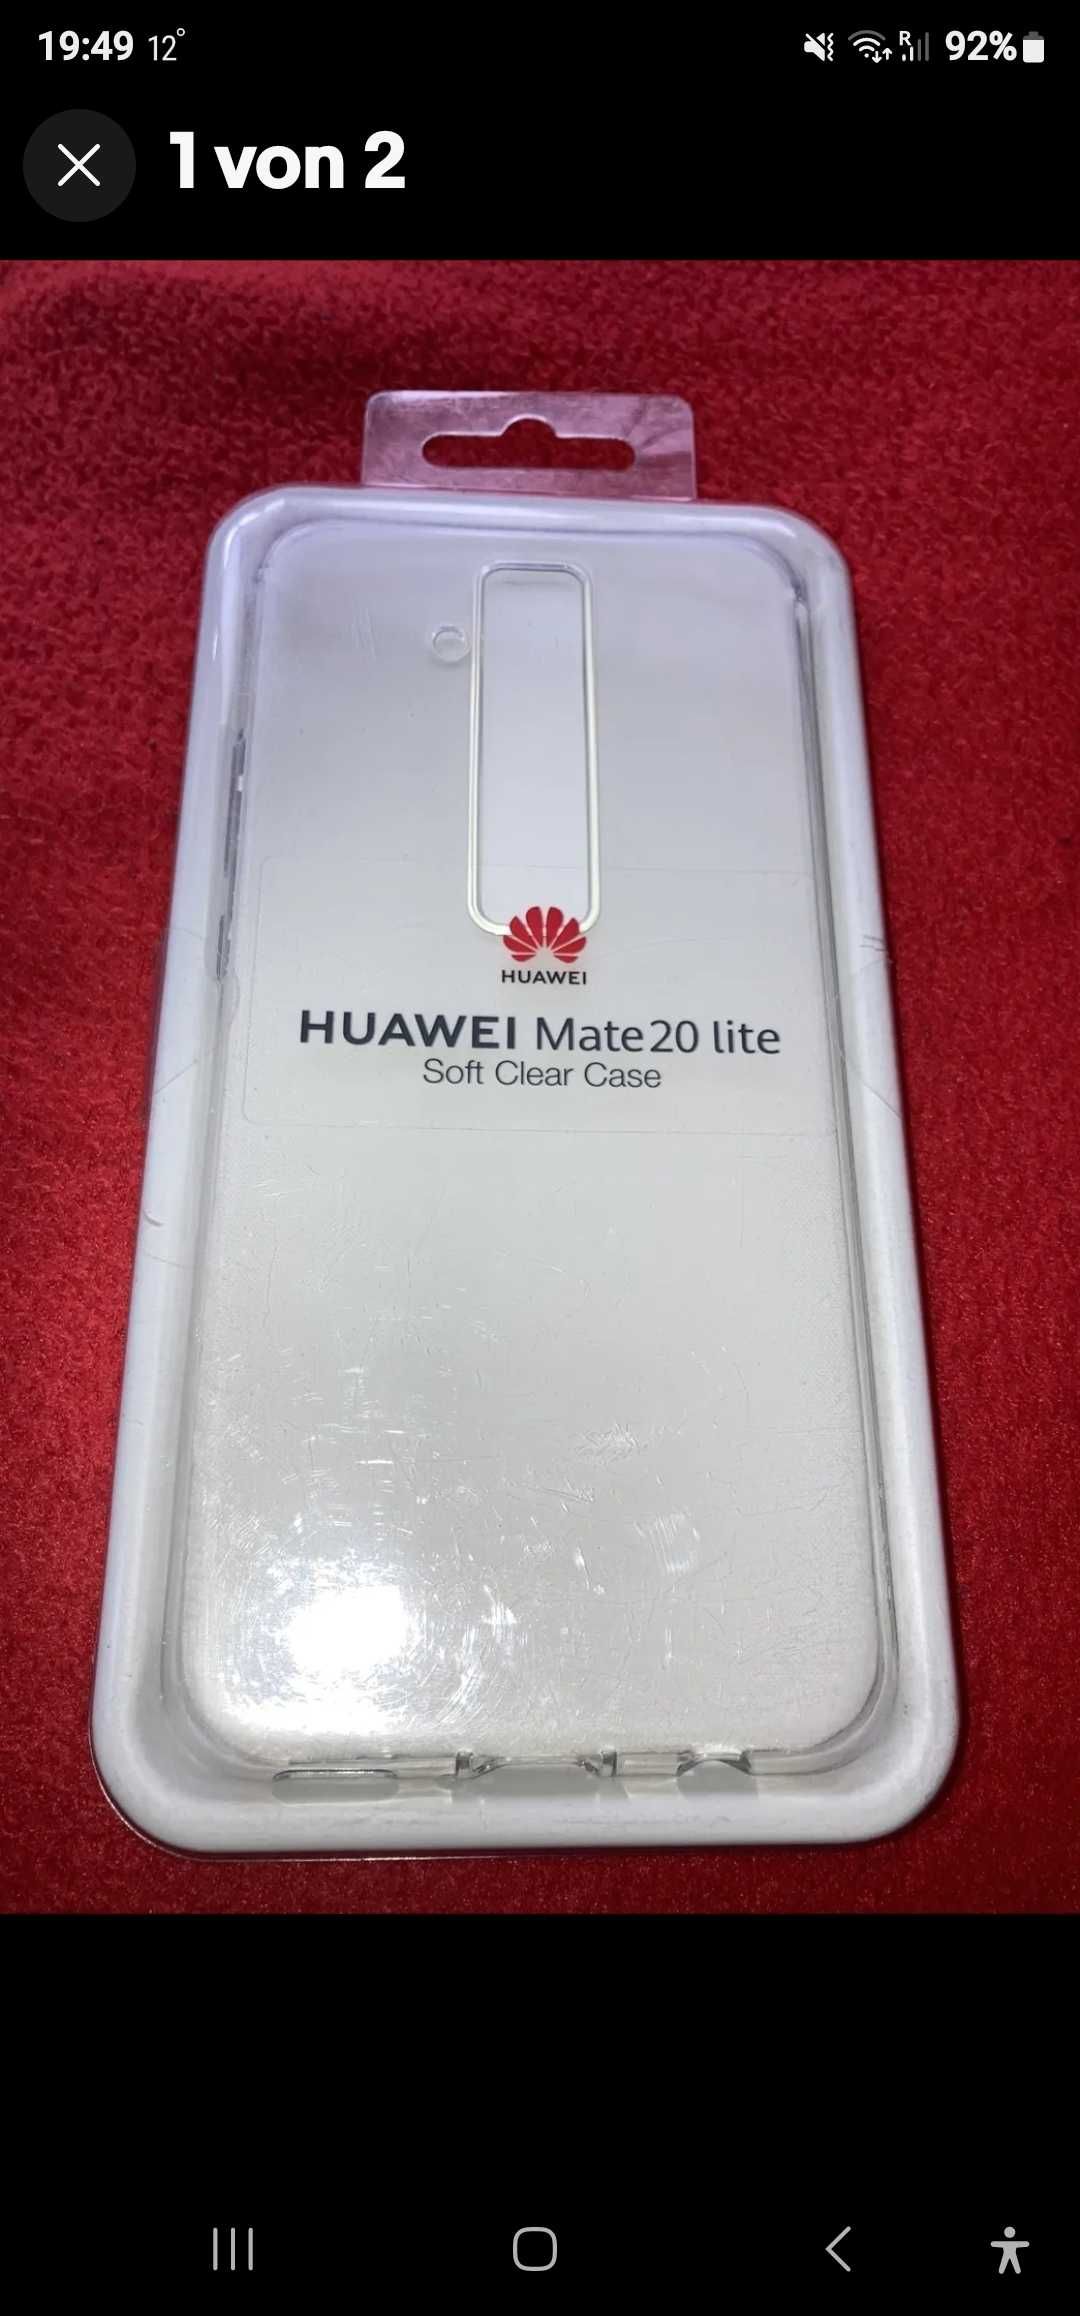 Huawei mate 20 lite 64GB